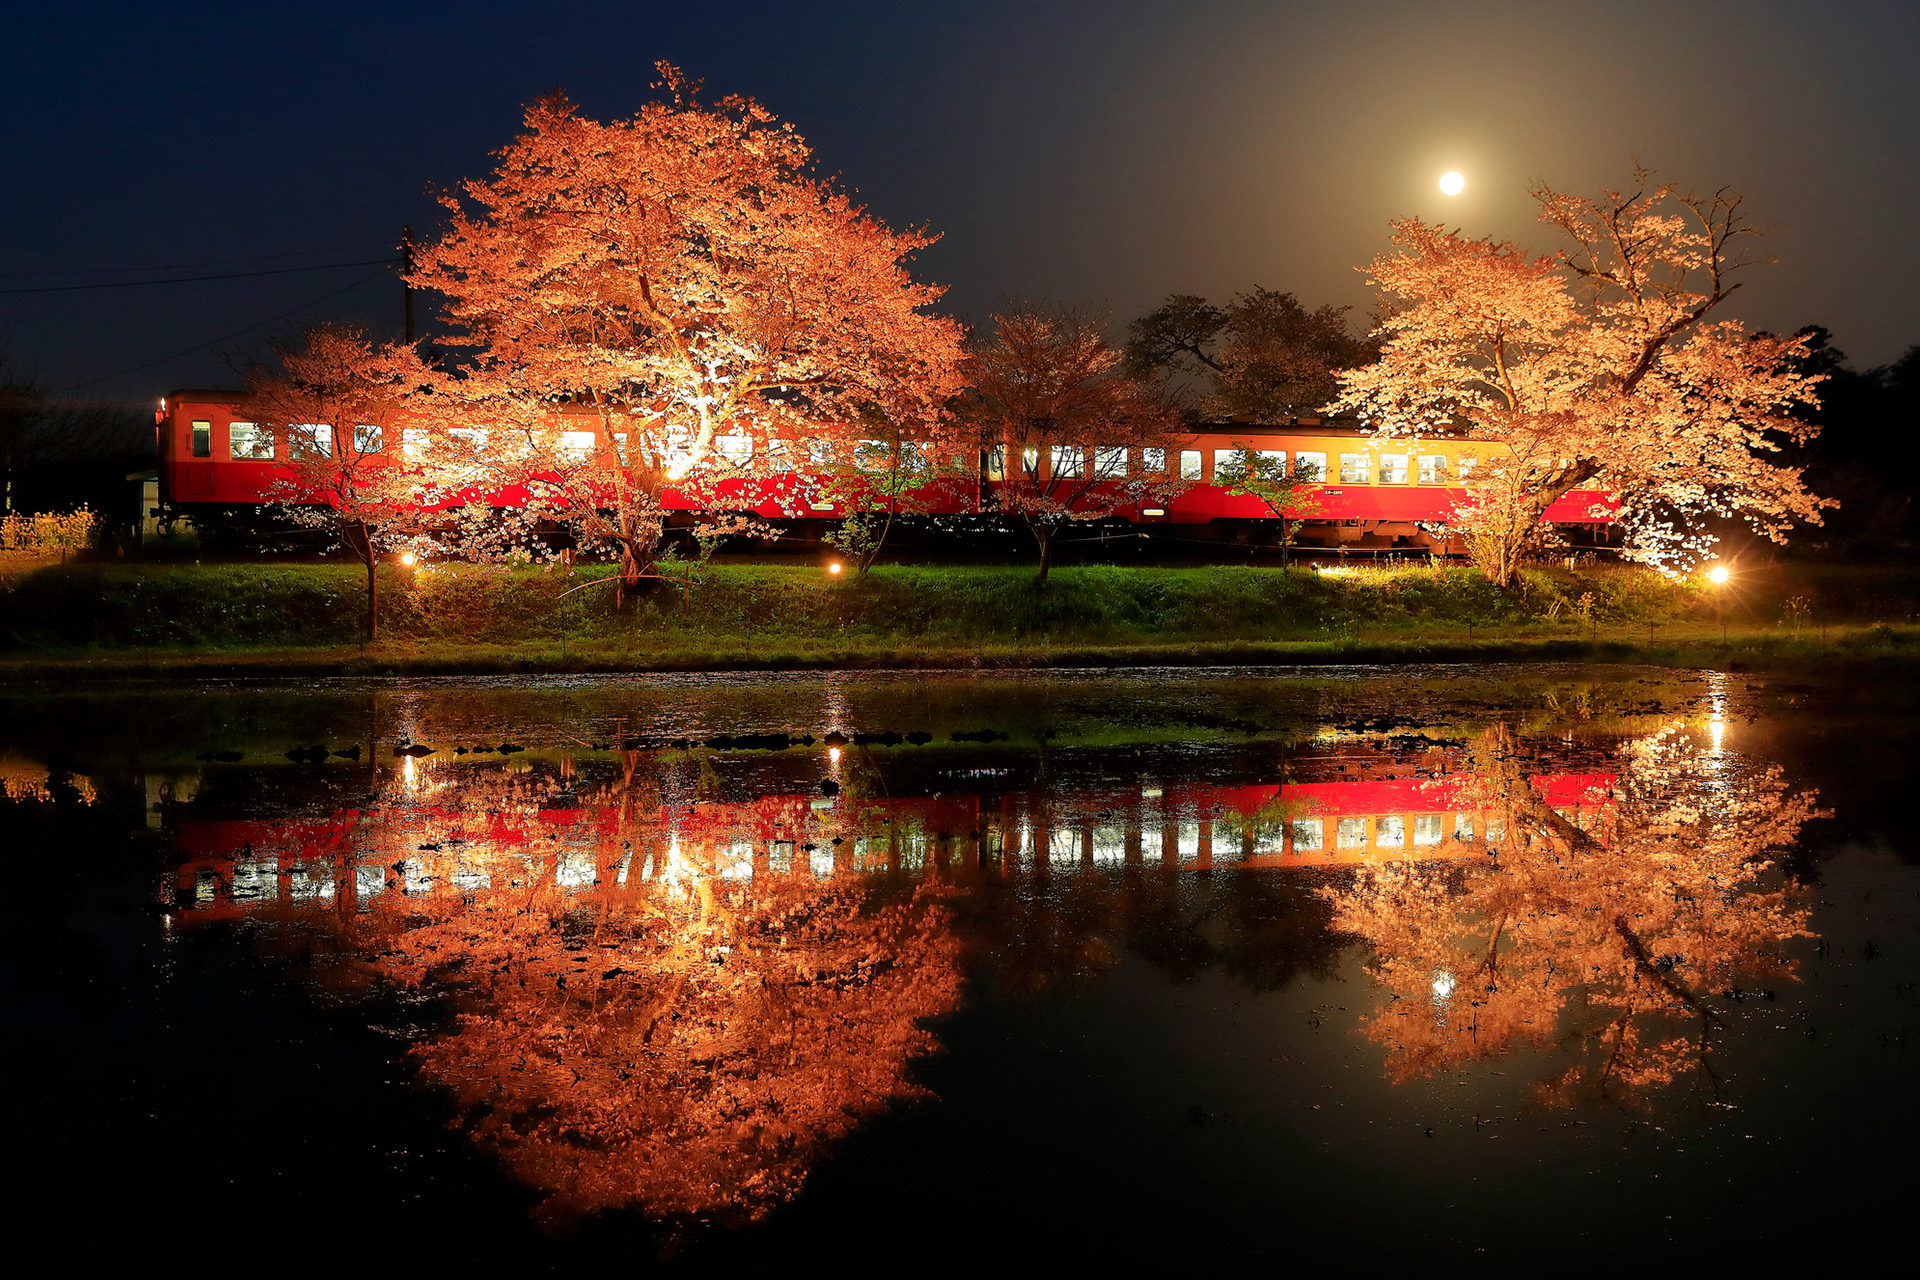 京都の有名観光地 嵐山 ここで見られる桜の絶景とは Caedekyoto カエデ京都 紅葉と伝統美を引き継ぐバッグ